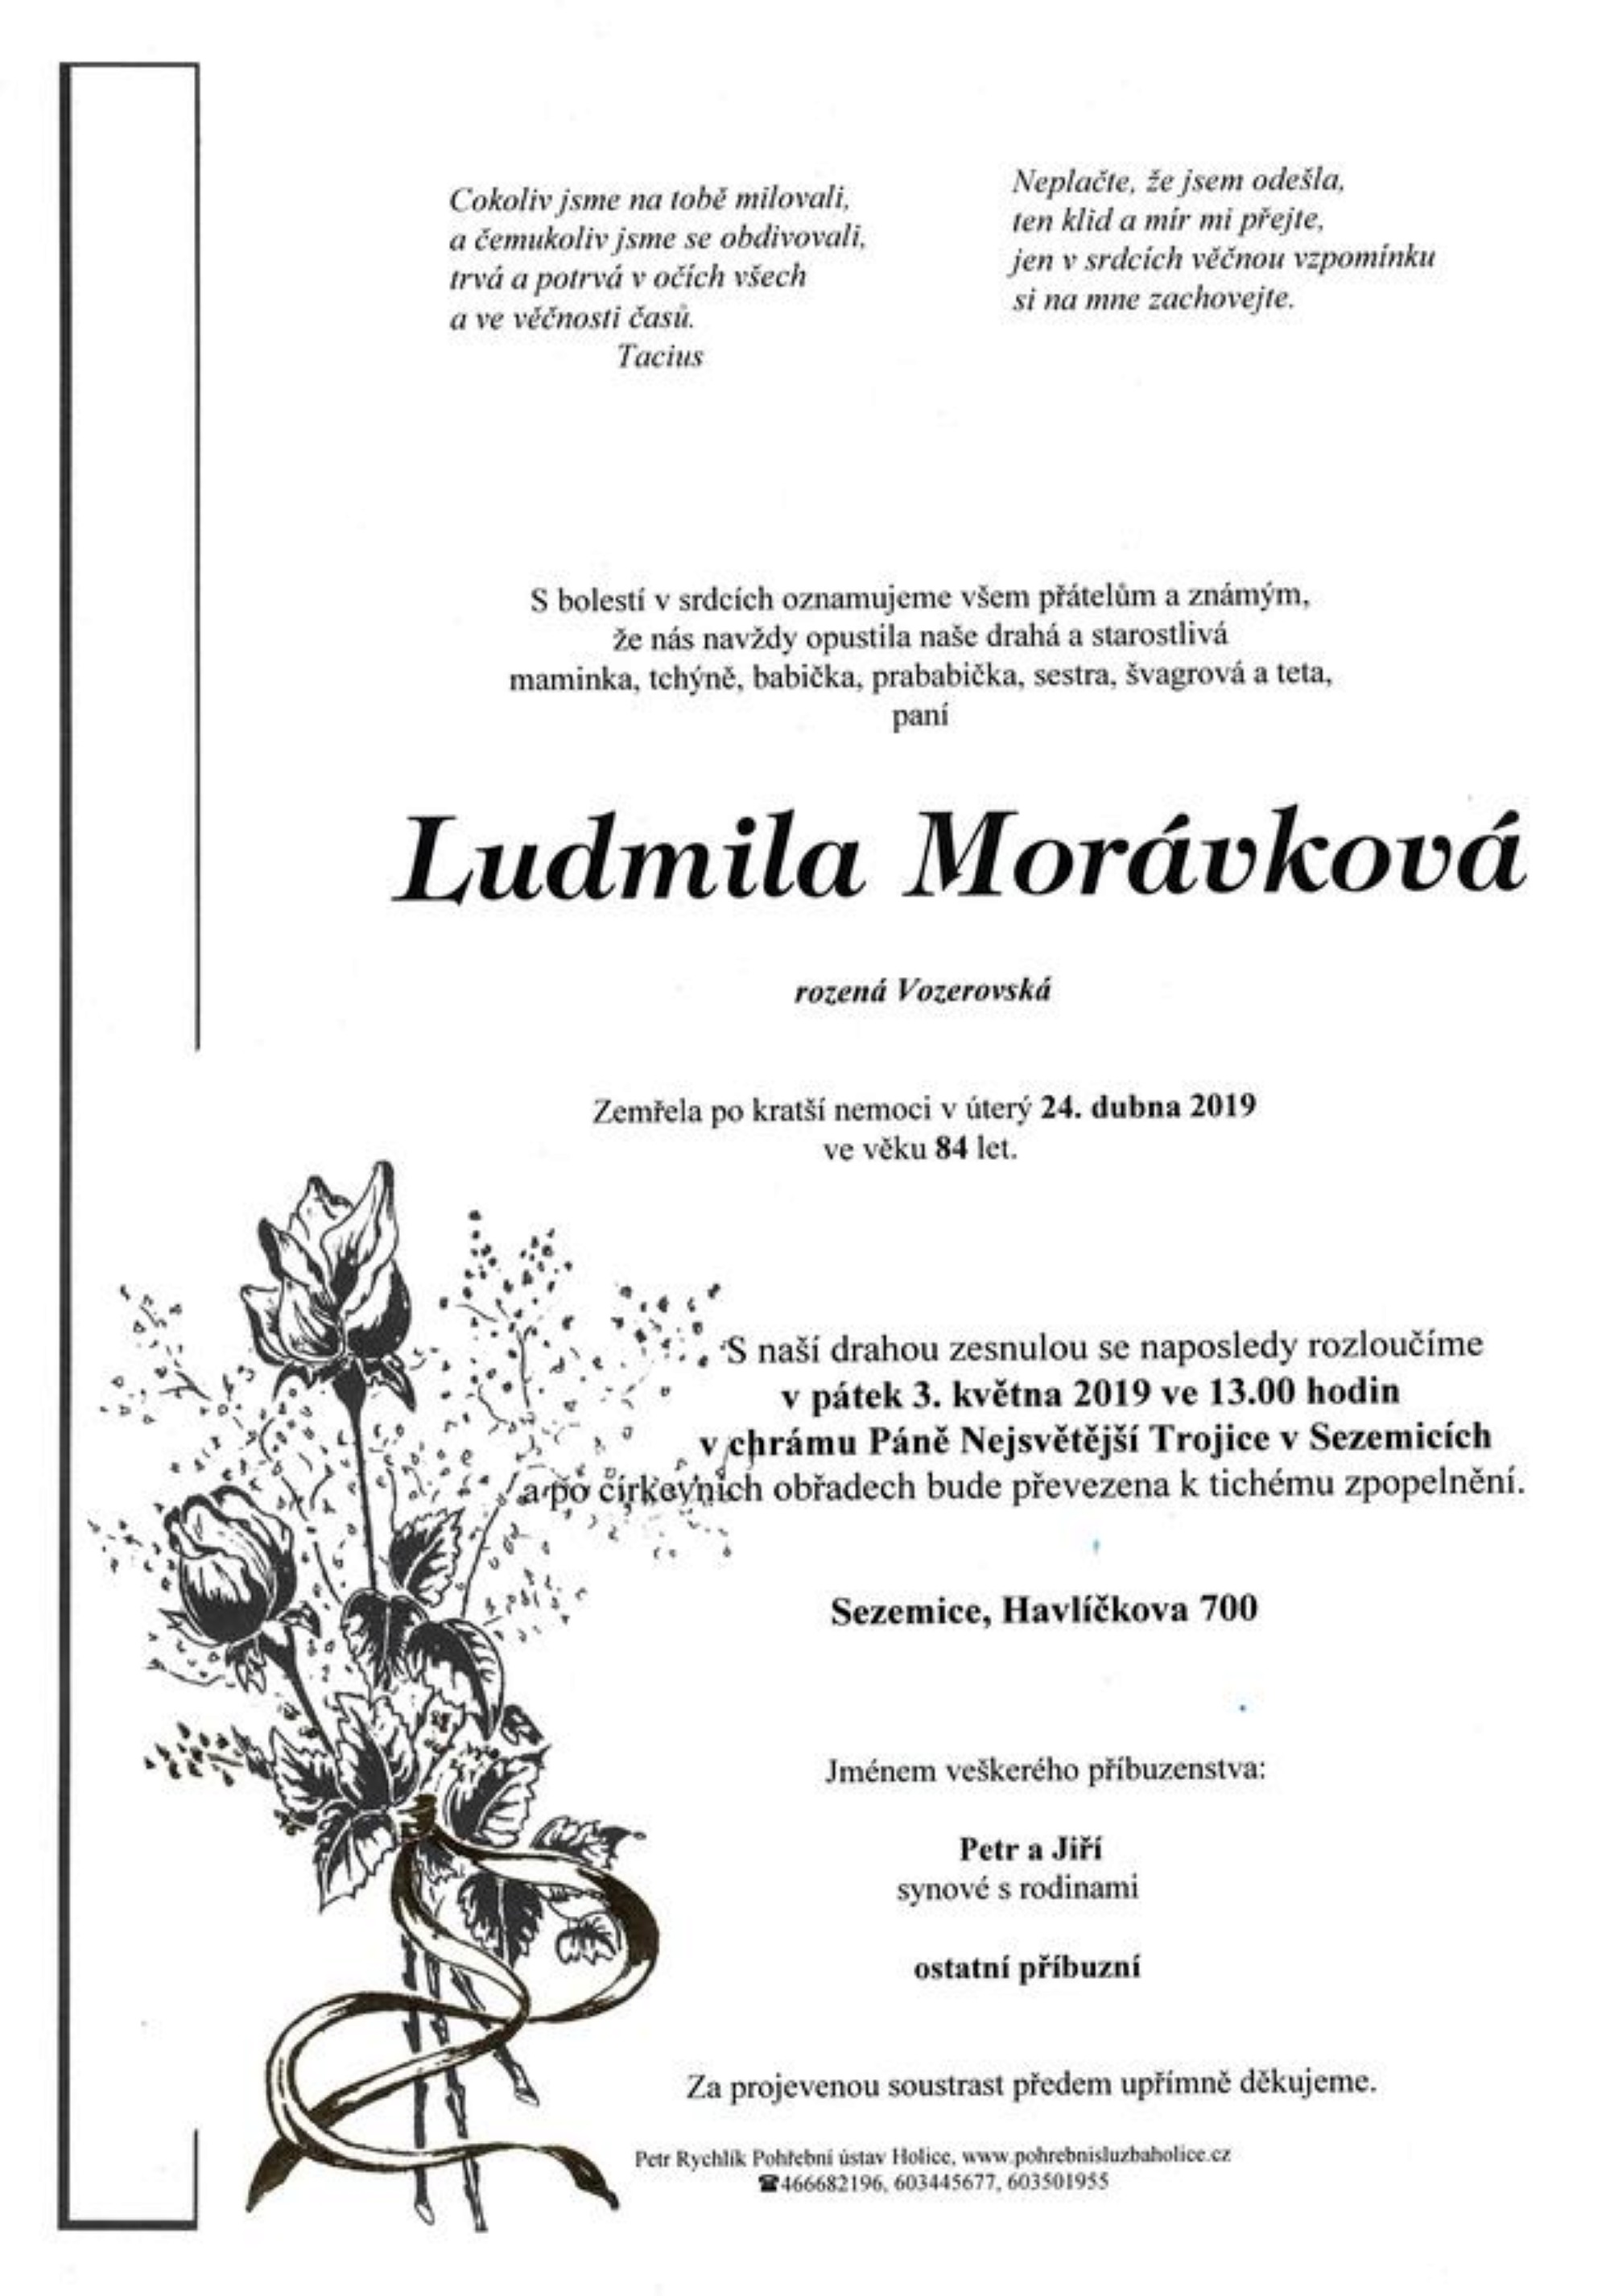 Ludmila Morávková